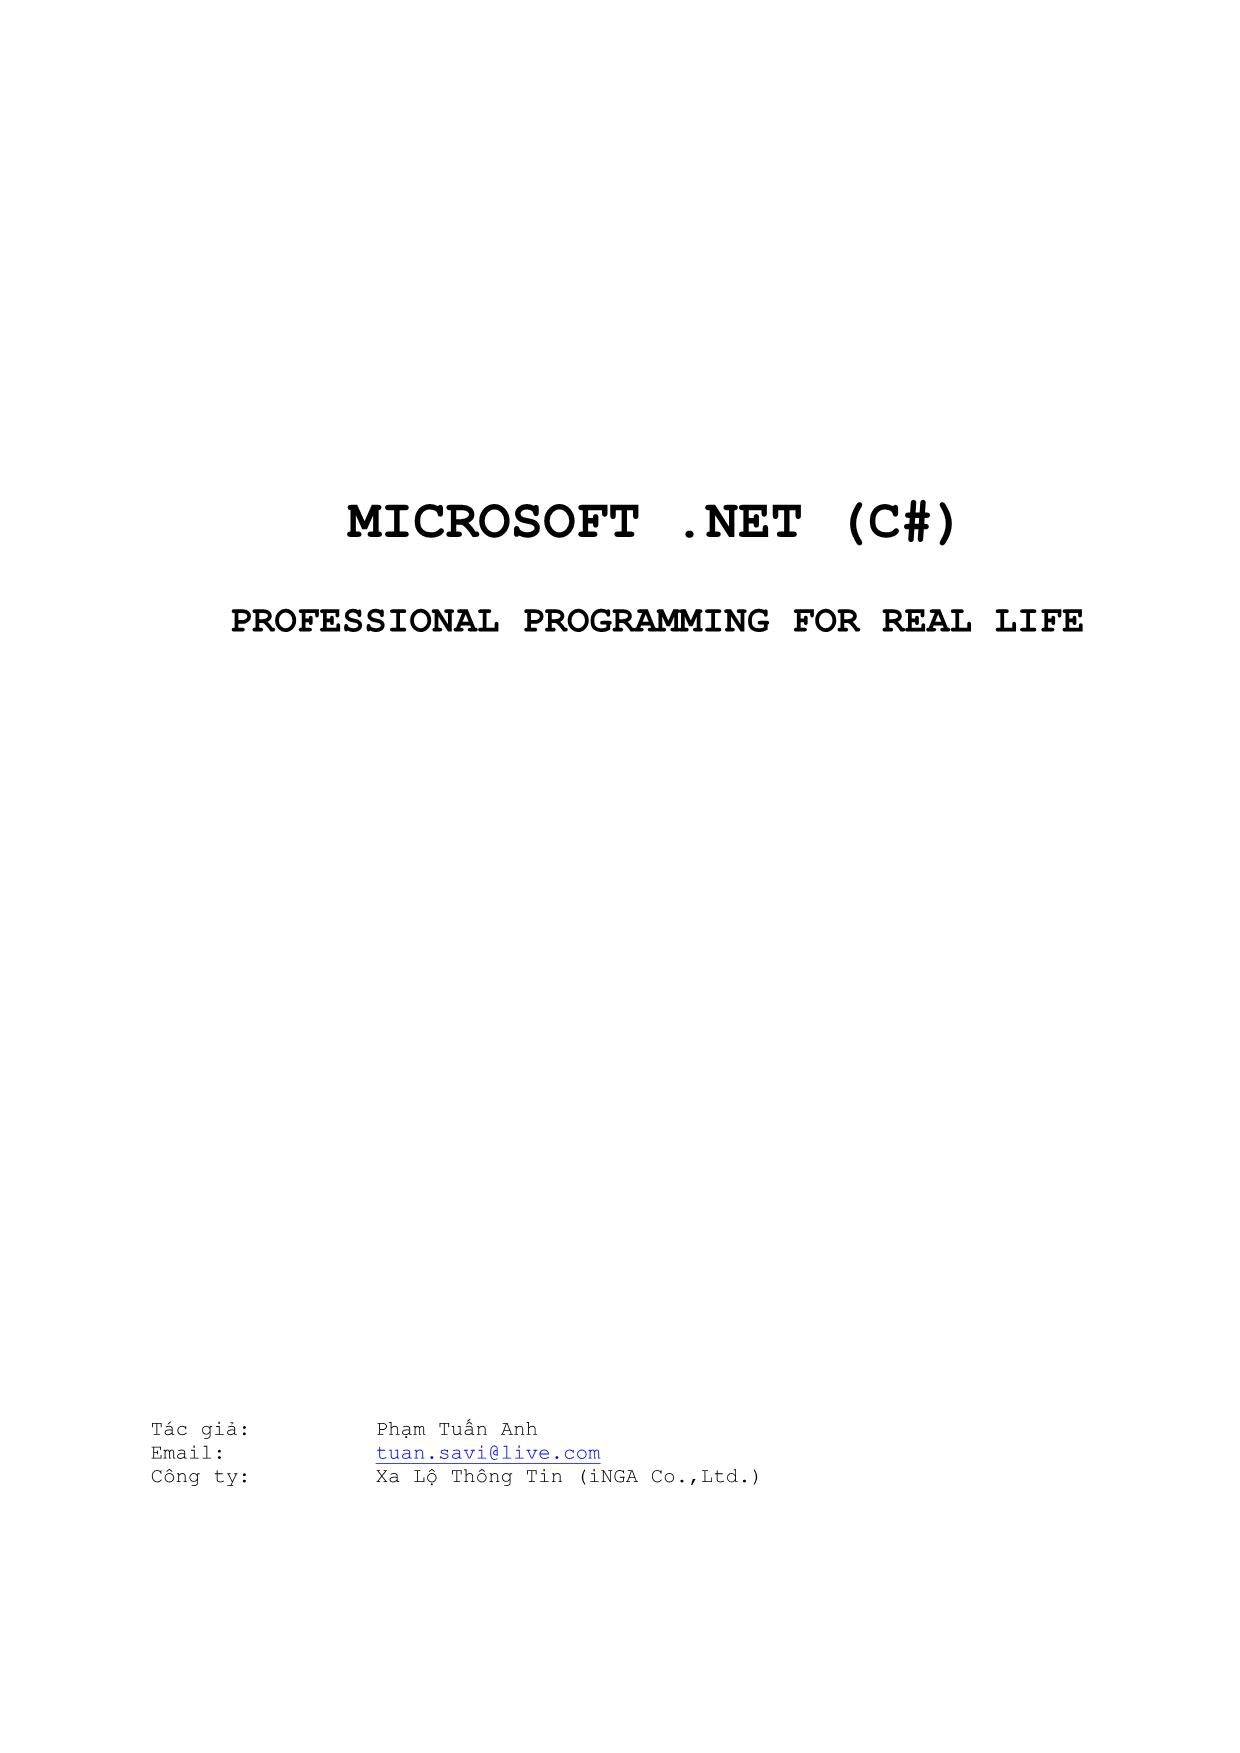 Giáo trình Microsoft .NET (C#) trang 1